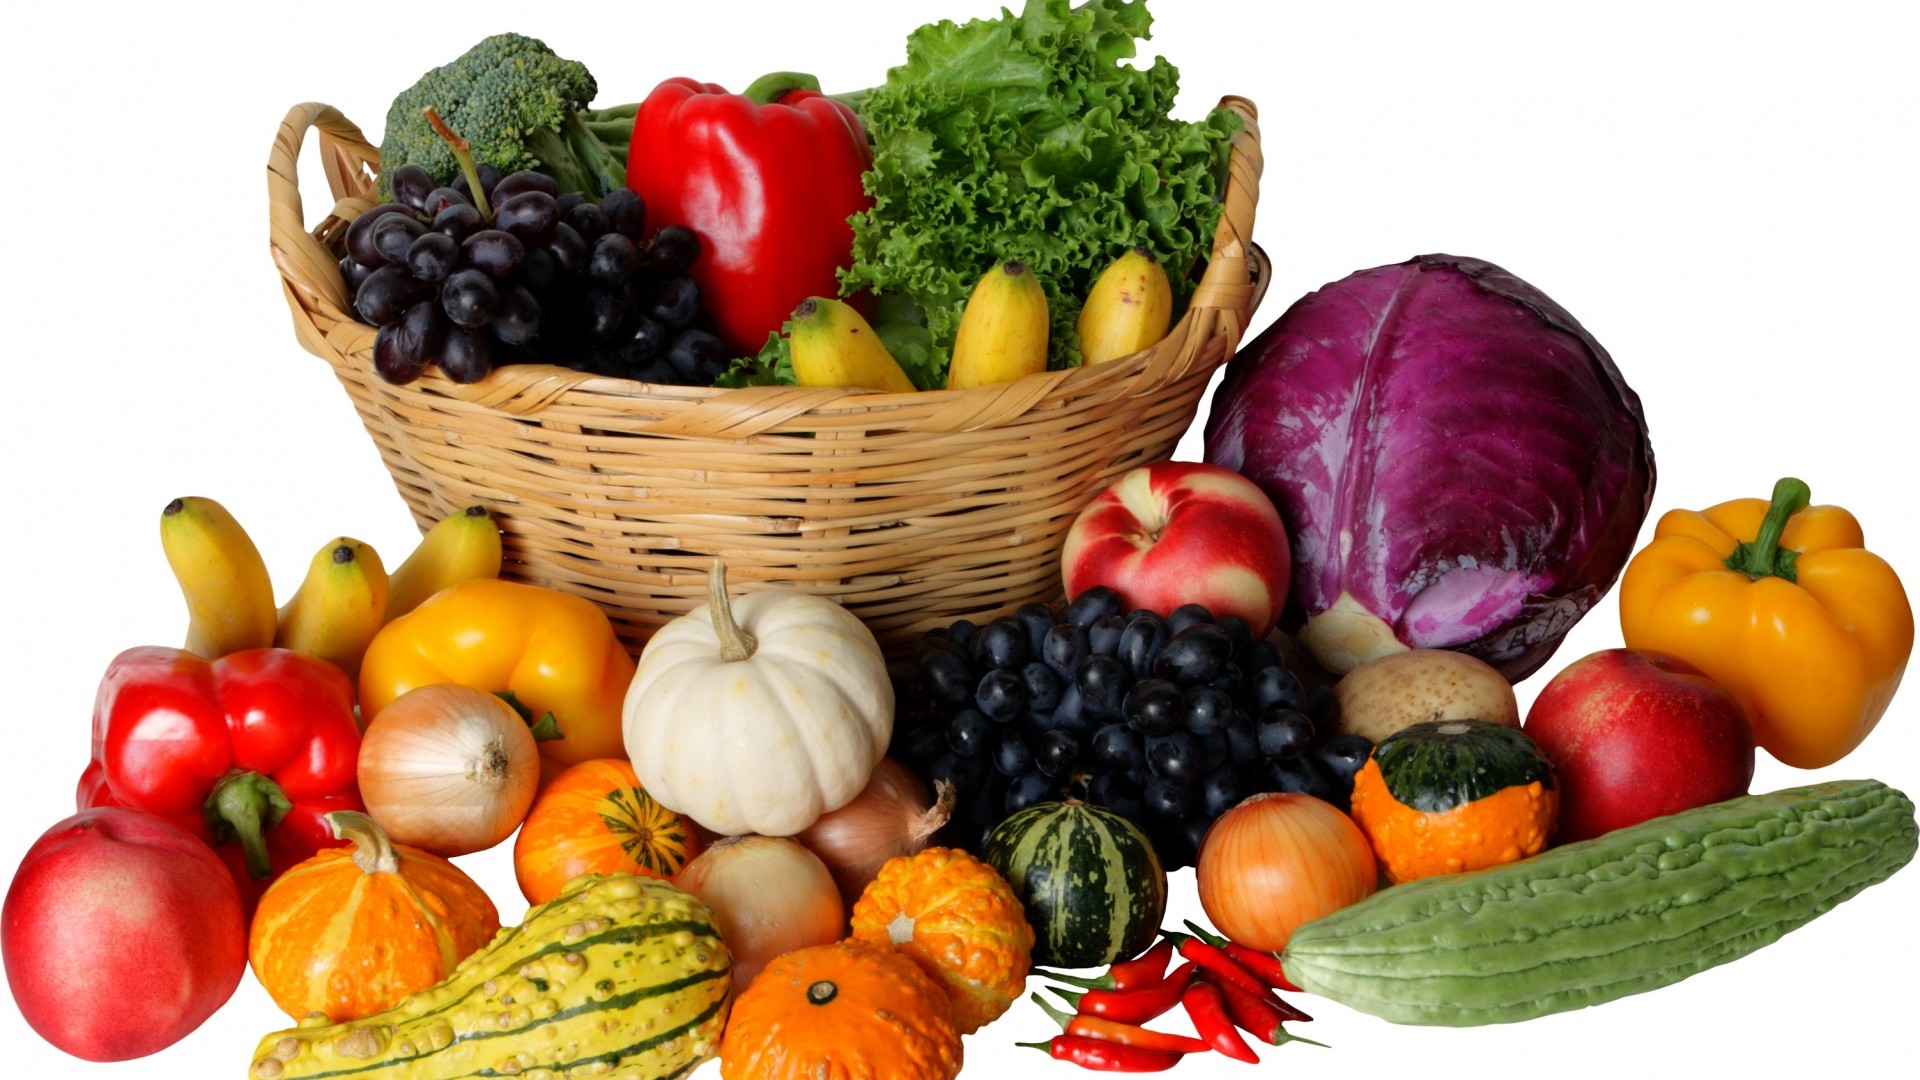 1920x1080, Get The Latest Vegetables, Fruit, Basket - Vegetables And Fruits Basket - HD Wallpaper 